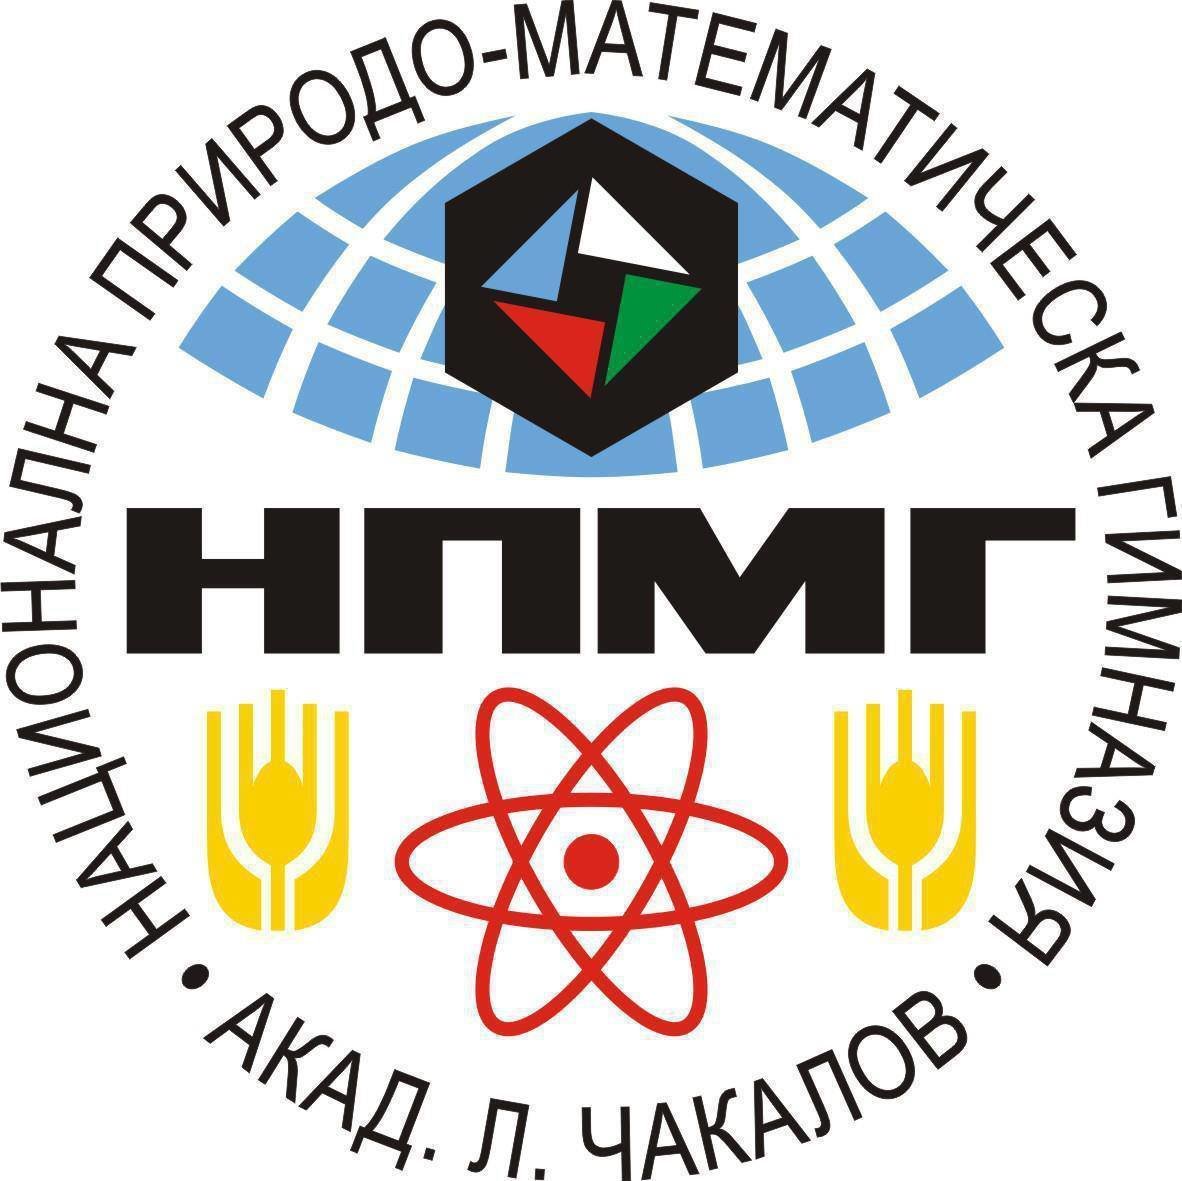 Националната природо математическа гимназия в София обяви прием на ученици след